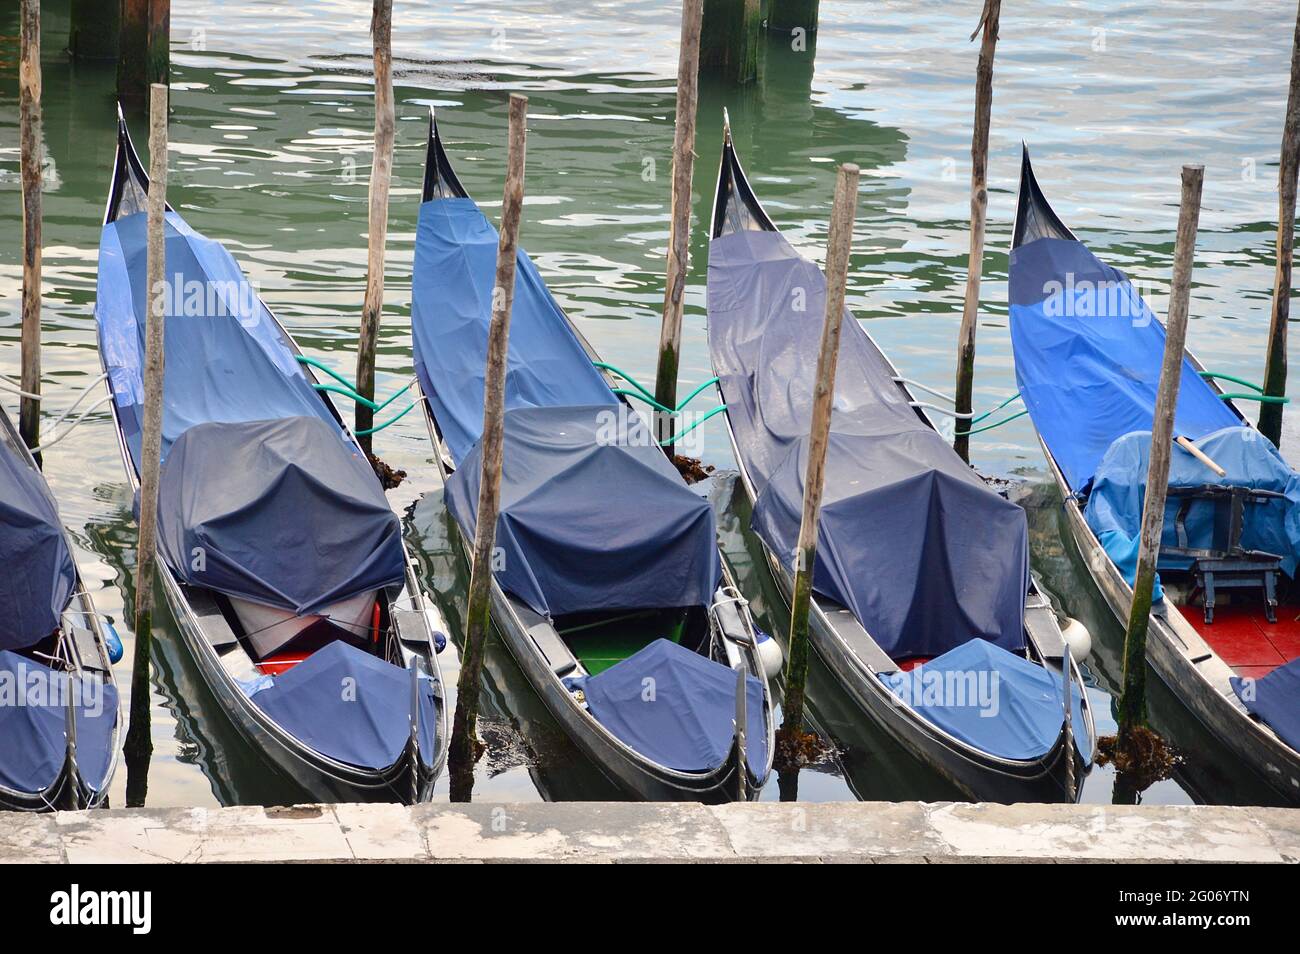 Venezianische Gondeln ruhen aufgrund des Touristenmangels, sind vereinsamt und abgedeckt Banque D'Images